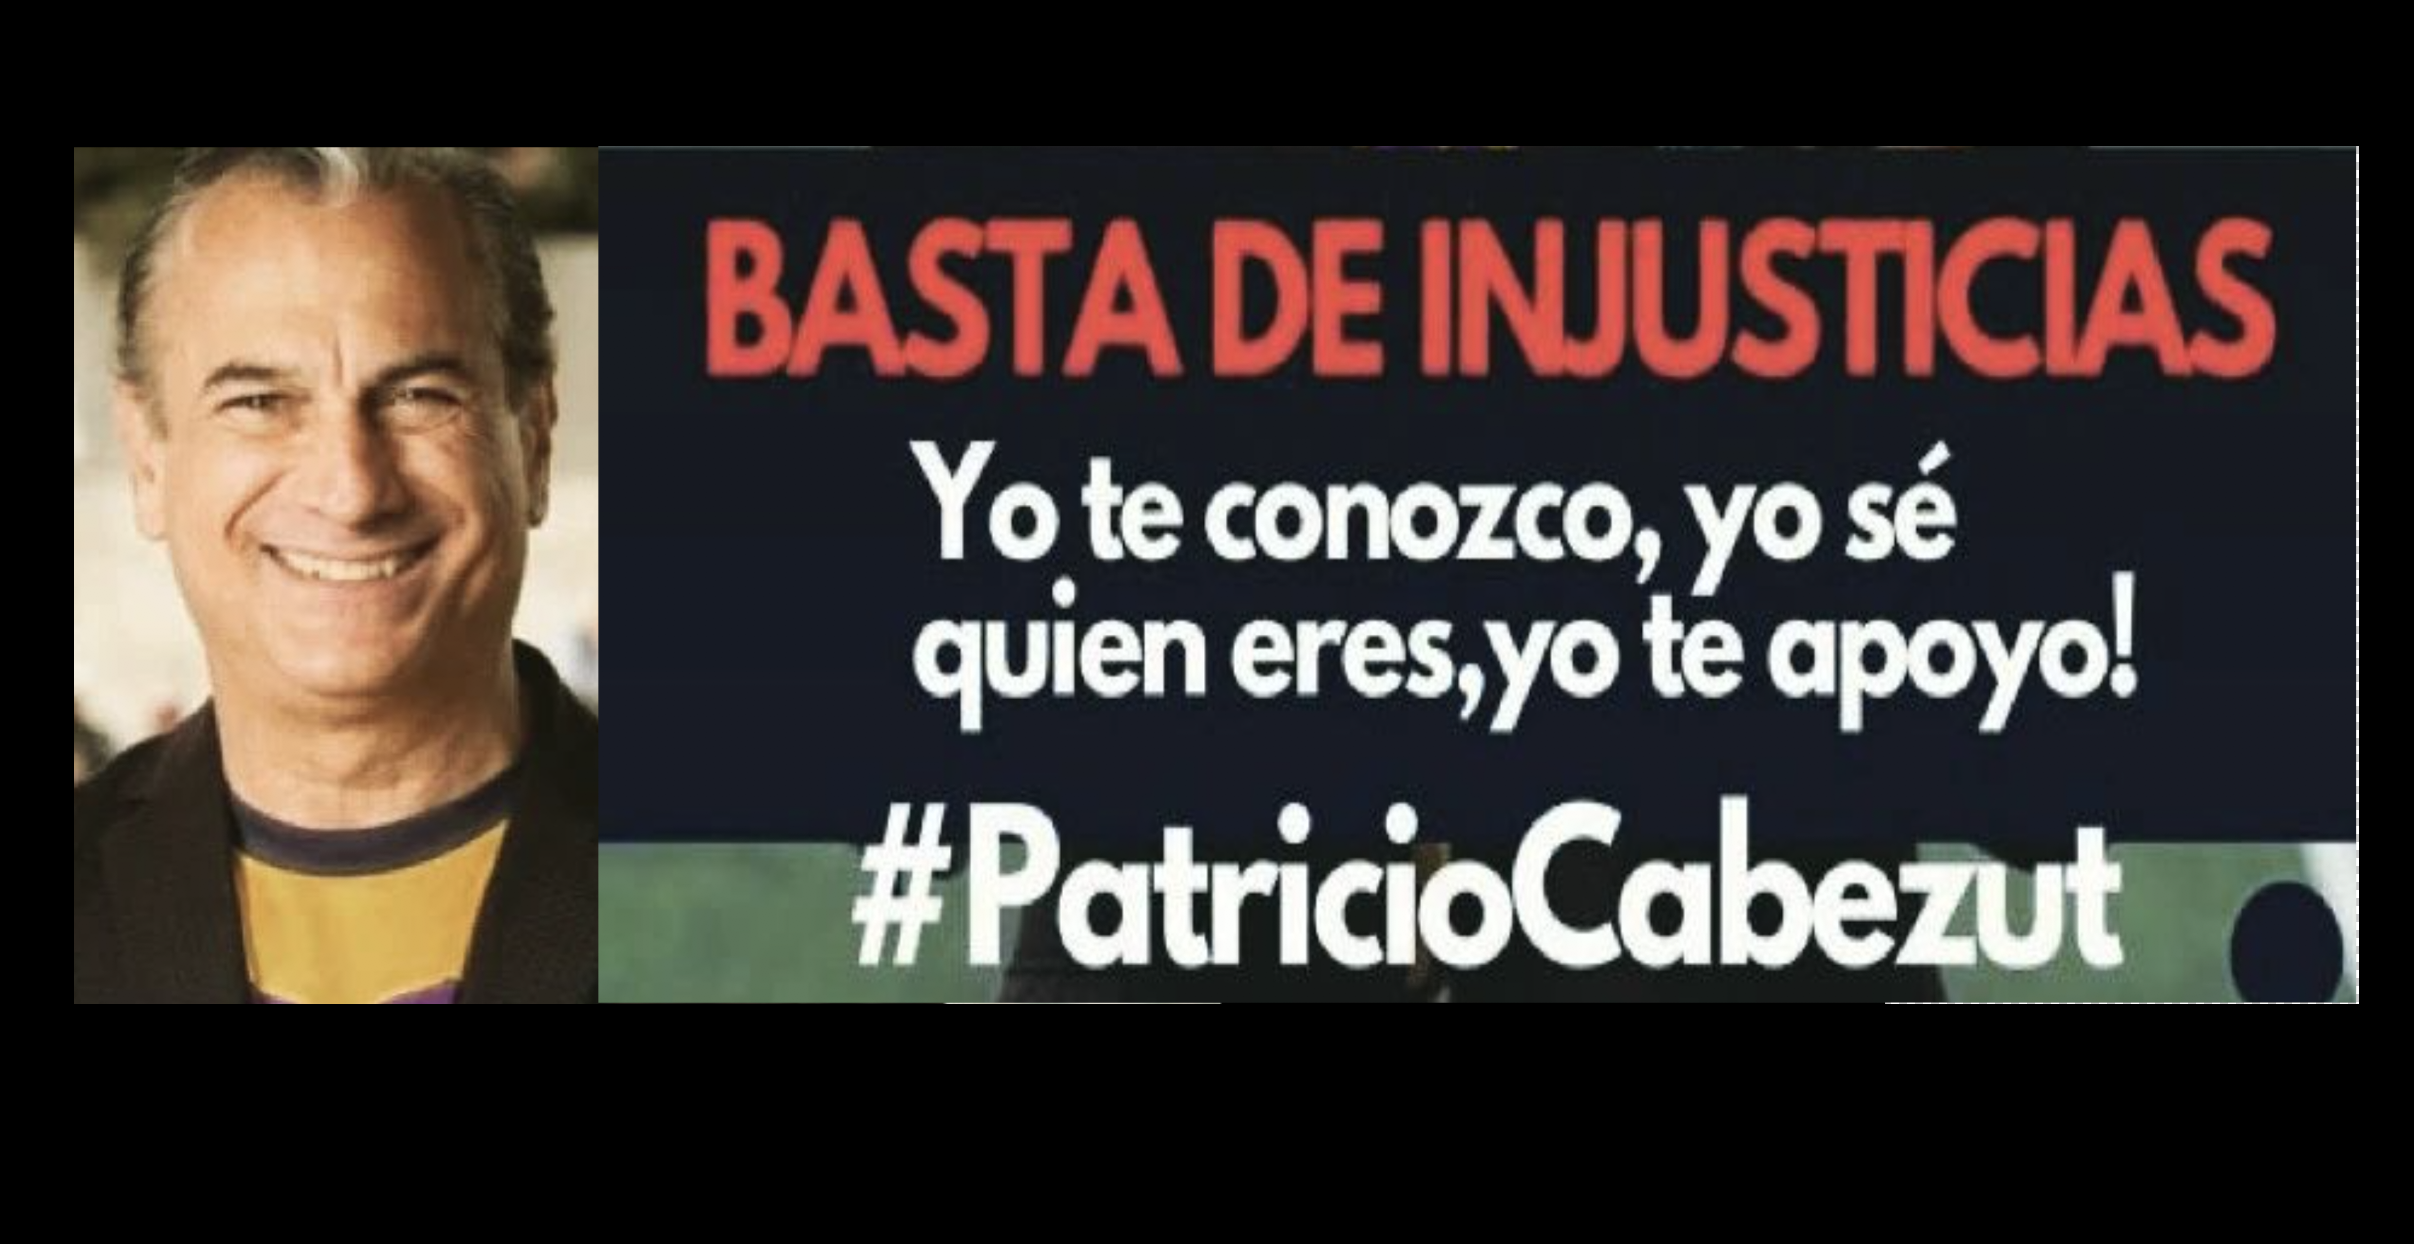 Famosos se unen en redes para darle apoyo a Patricio Cabezut con la frase: “Yo te conozco, yo sé quién eres y yo te apoyo”